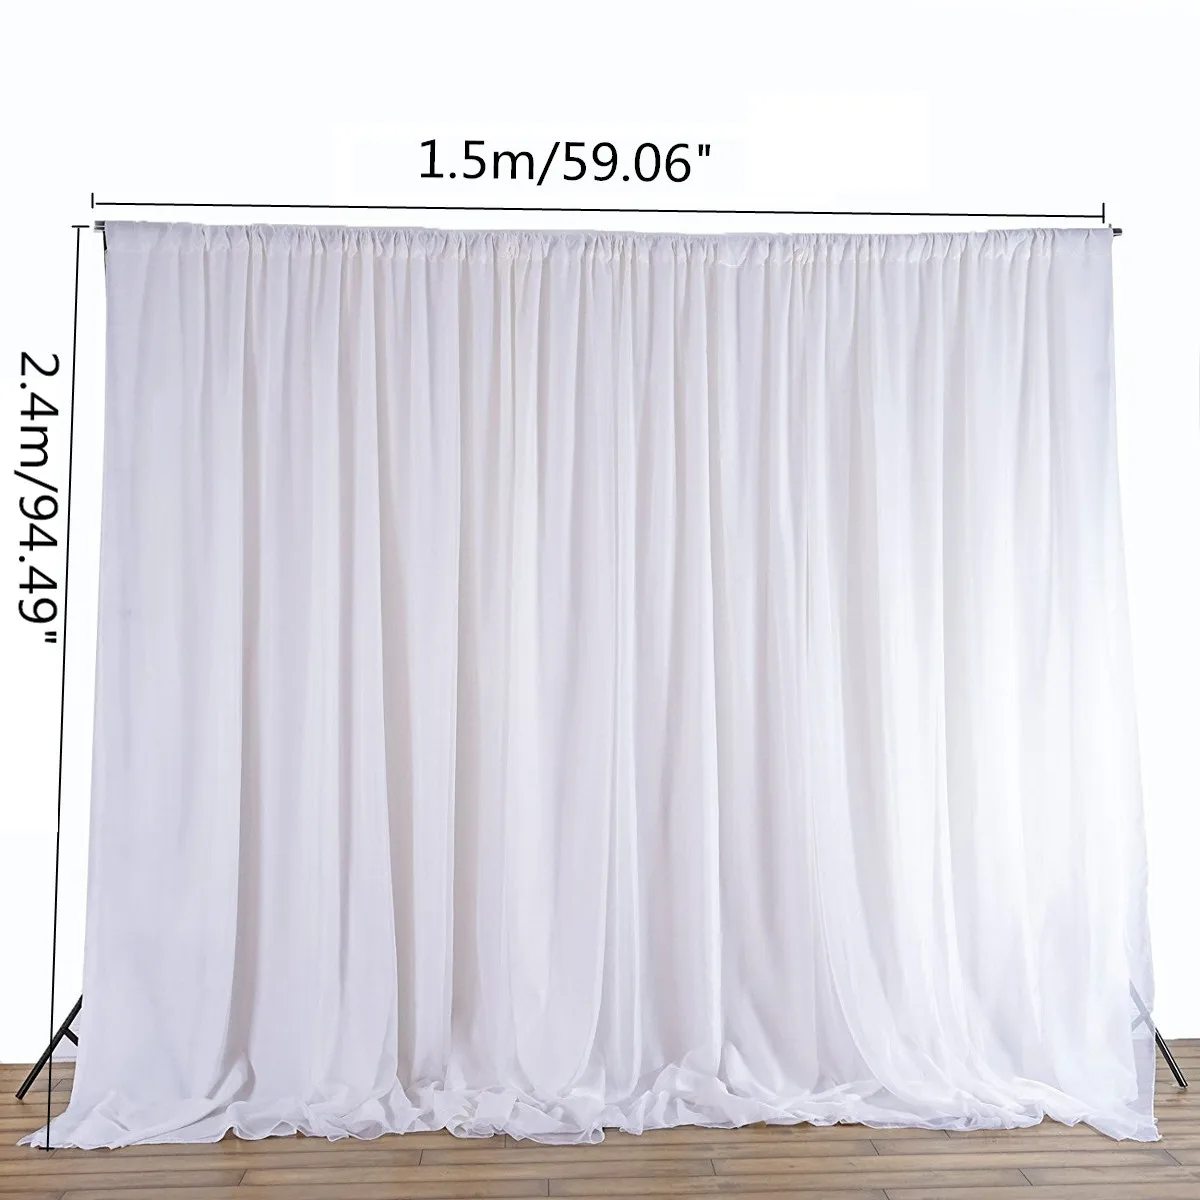 Белые прозрачные шелковые тканевые шторы панели подвесные шторы фото фон Свадебные торжества DIY текстиль для украшения 2,4x1,5 м